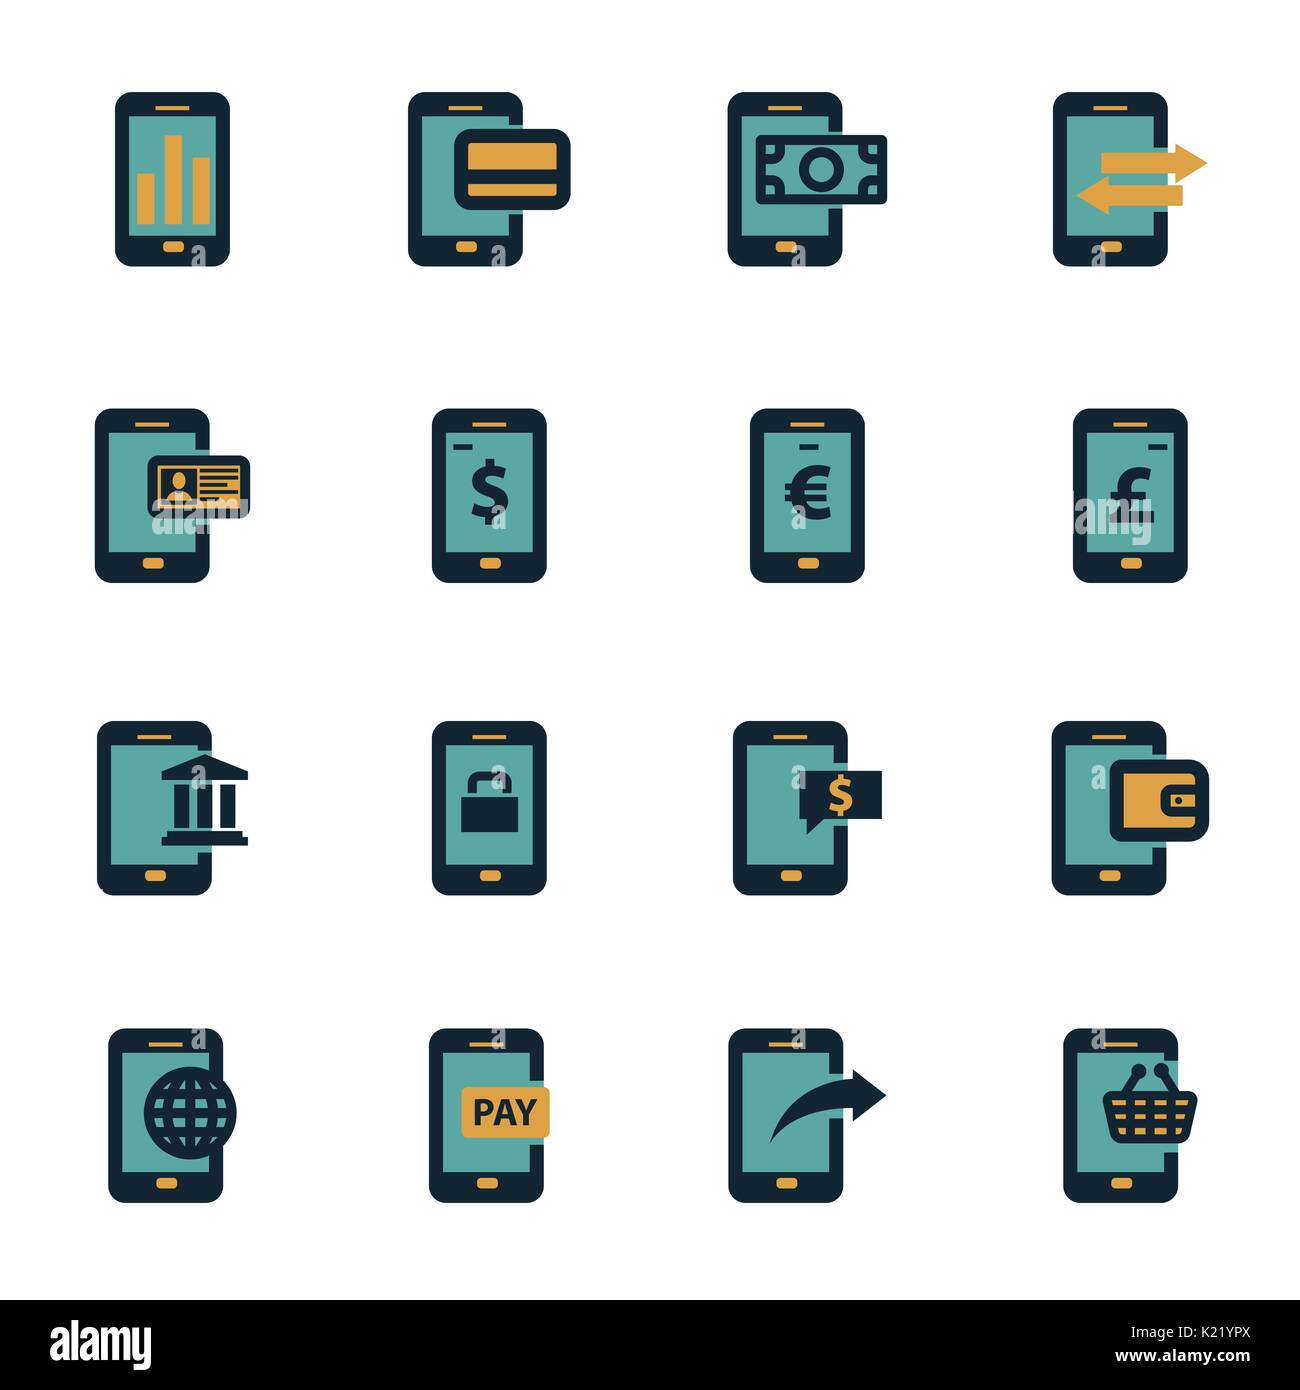 Vektor-flach mobile-Banking-Icons set auf weißem Hintergrund Stock Vektor